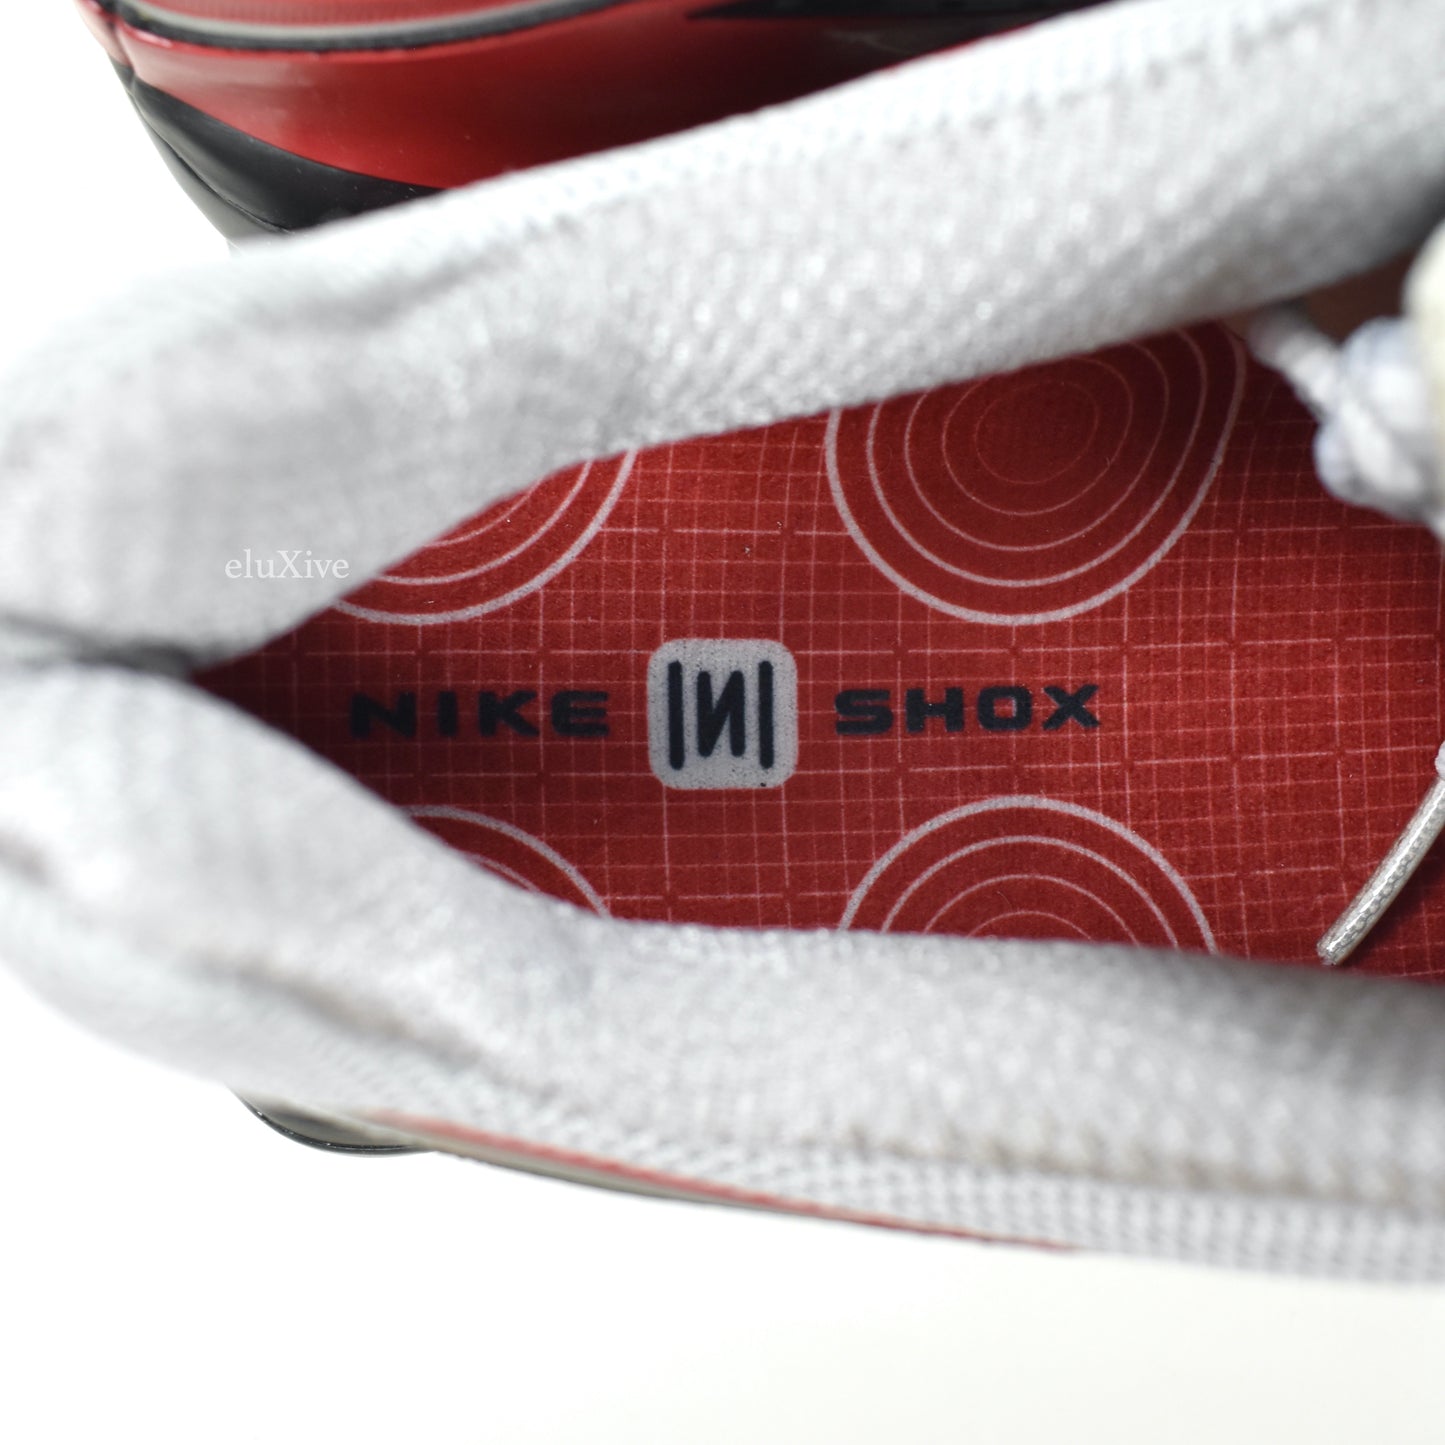 Nike - Shox Ride 3 (III) Metallic Silver / Red (2006)